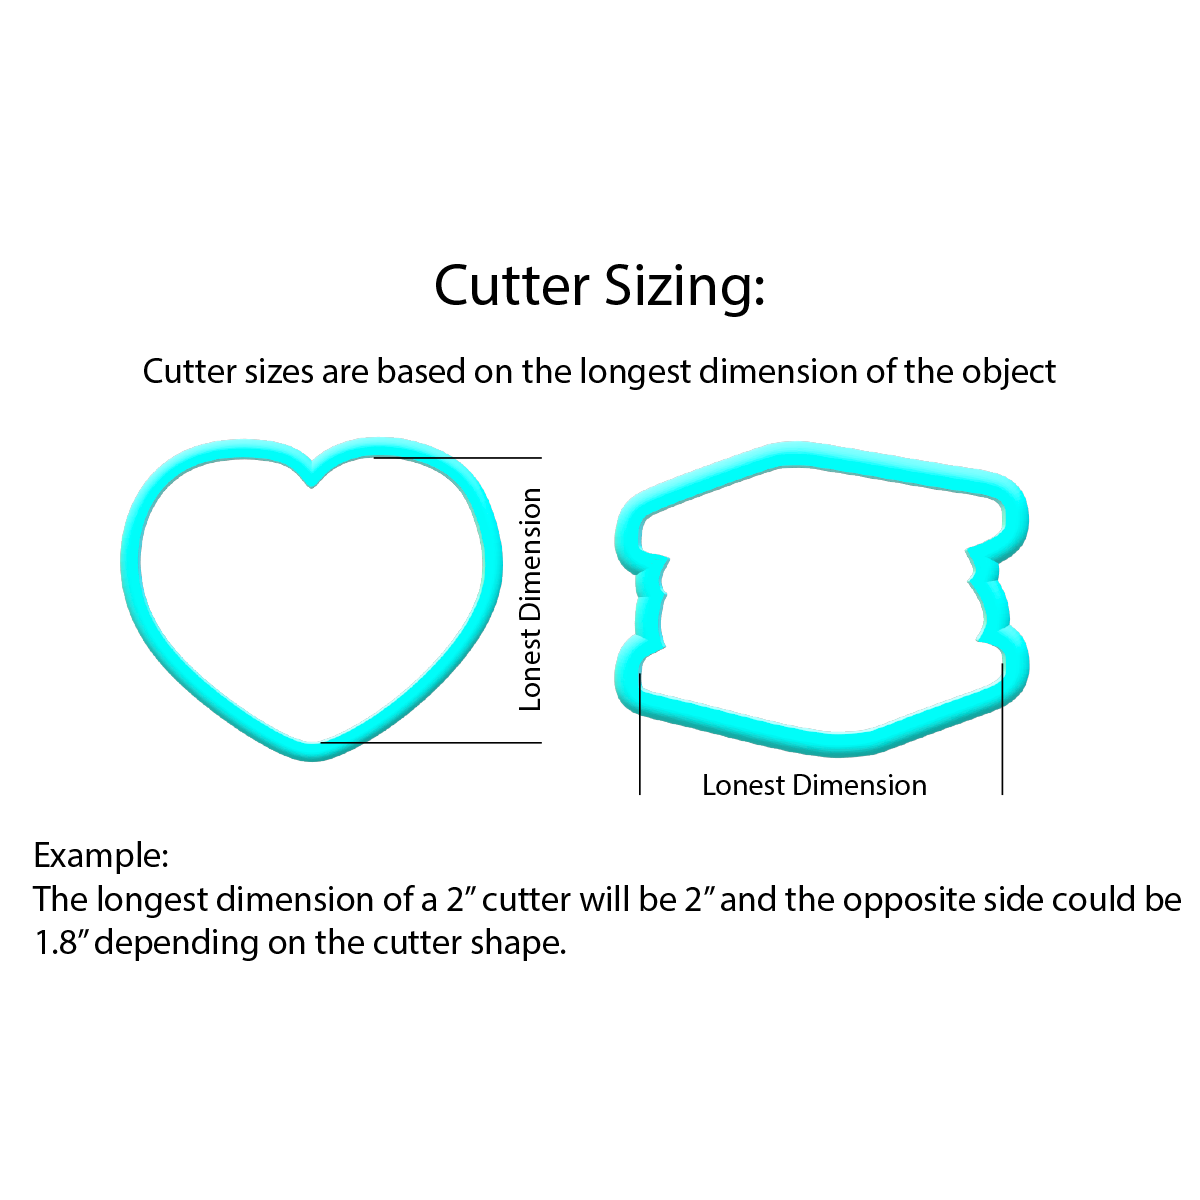 Easter Egg Cookie Cutter | Multi Cutter | STL File